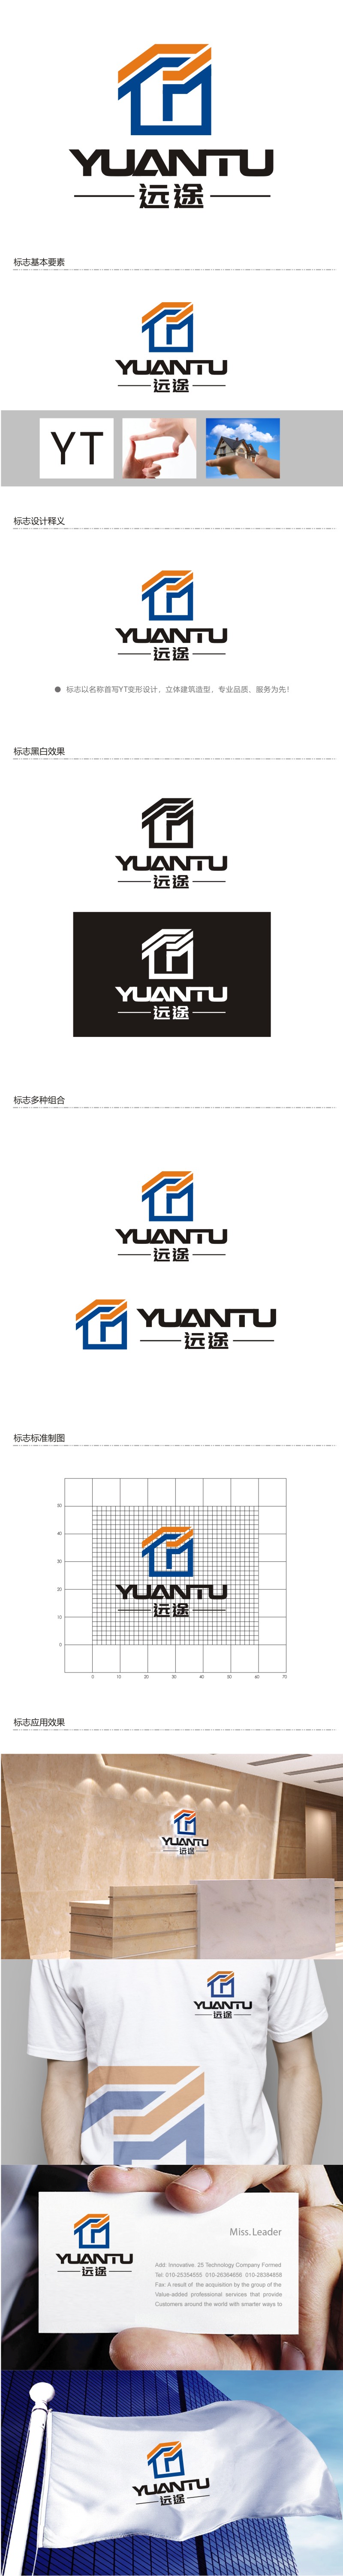 谭家强的江苏远途智能装配房有限公司logo设计